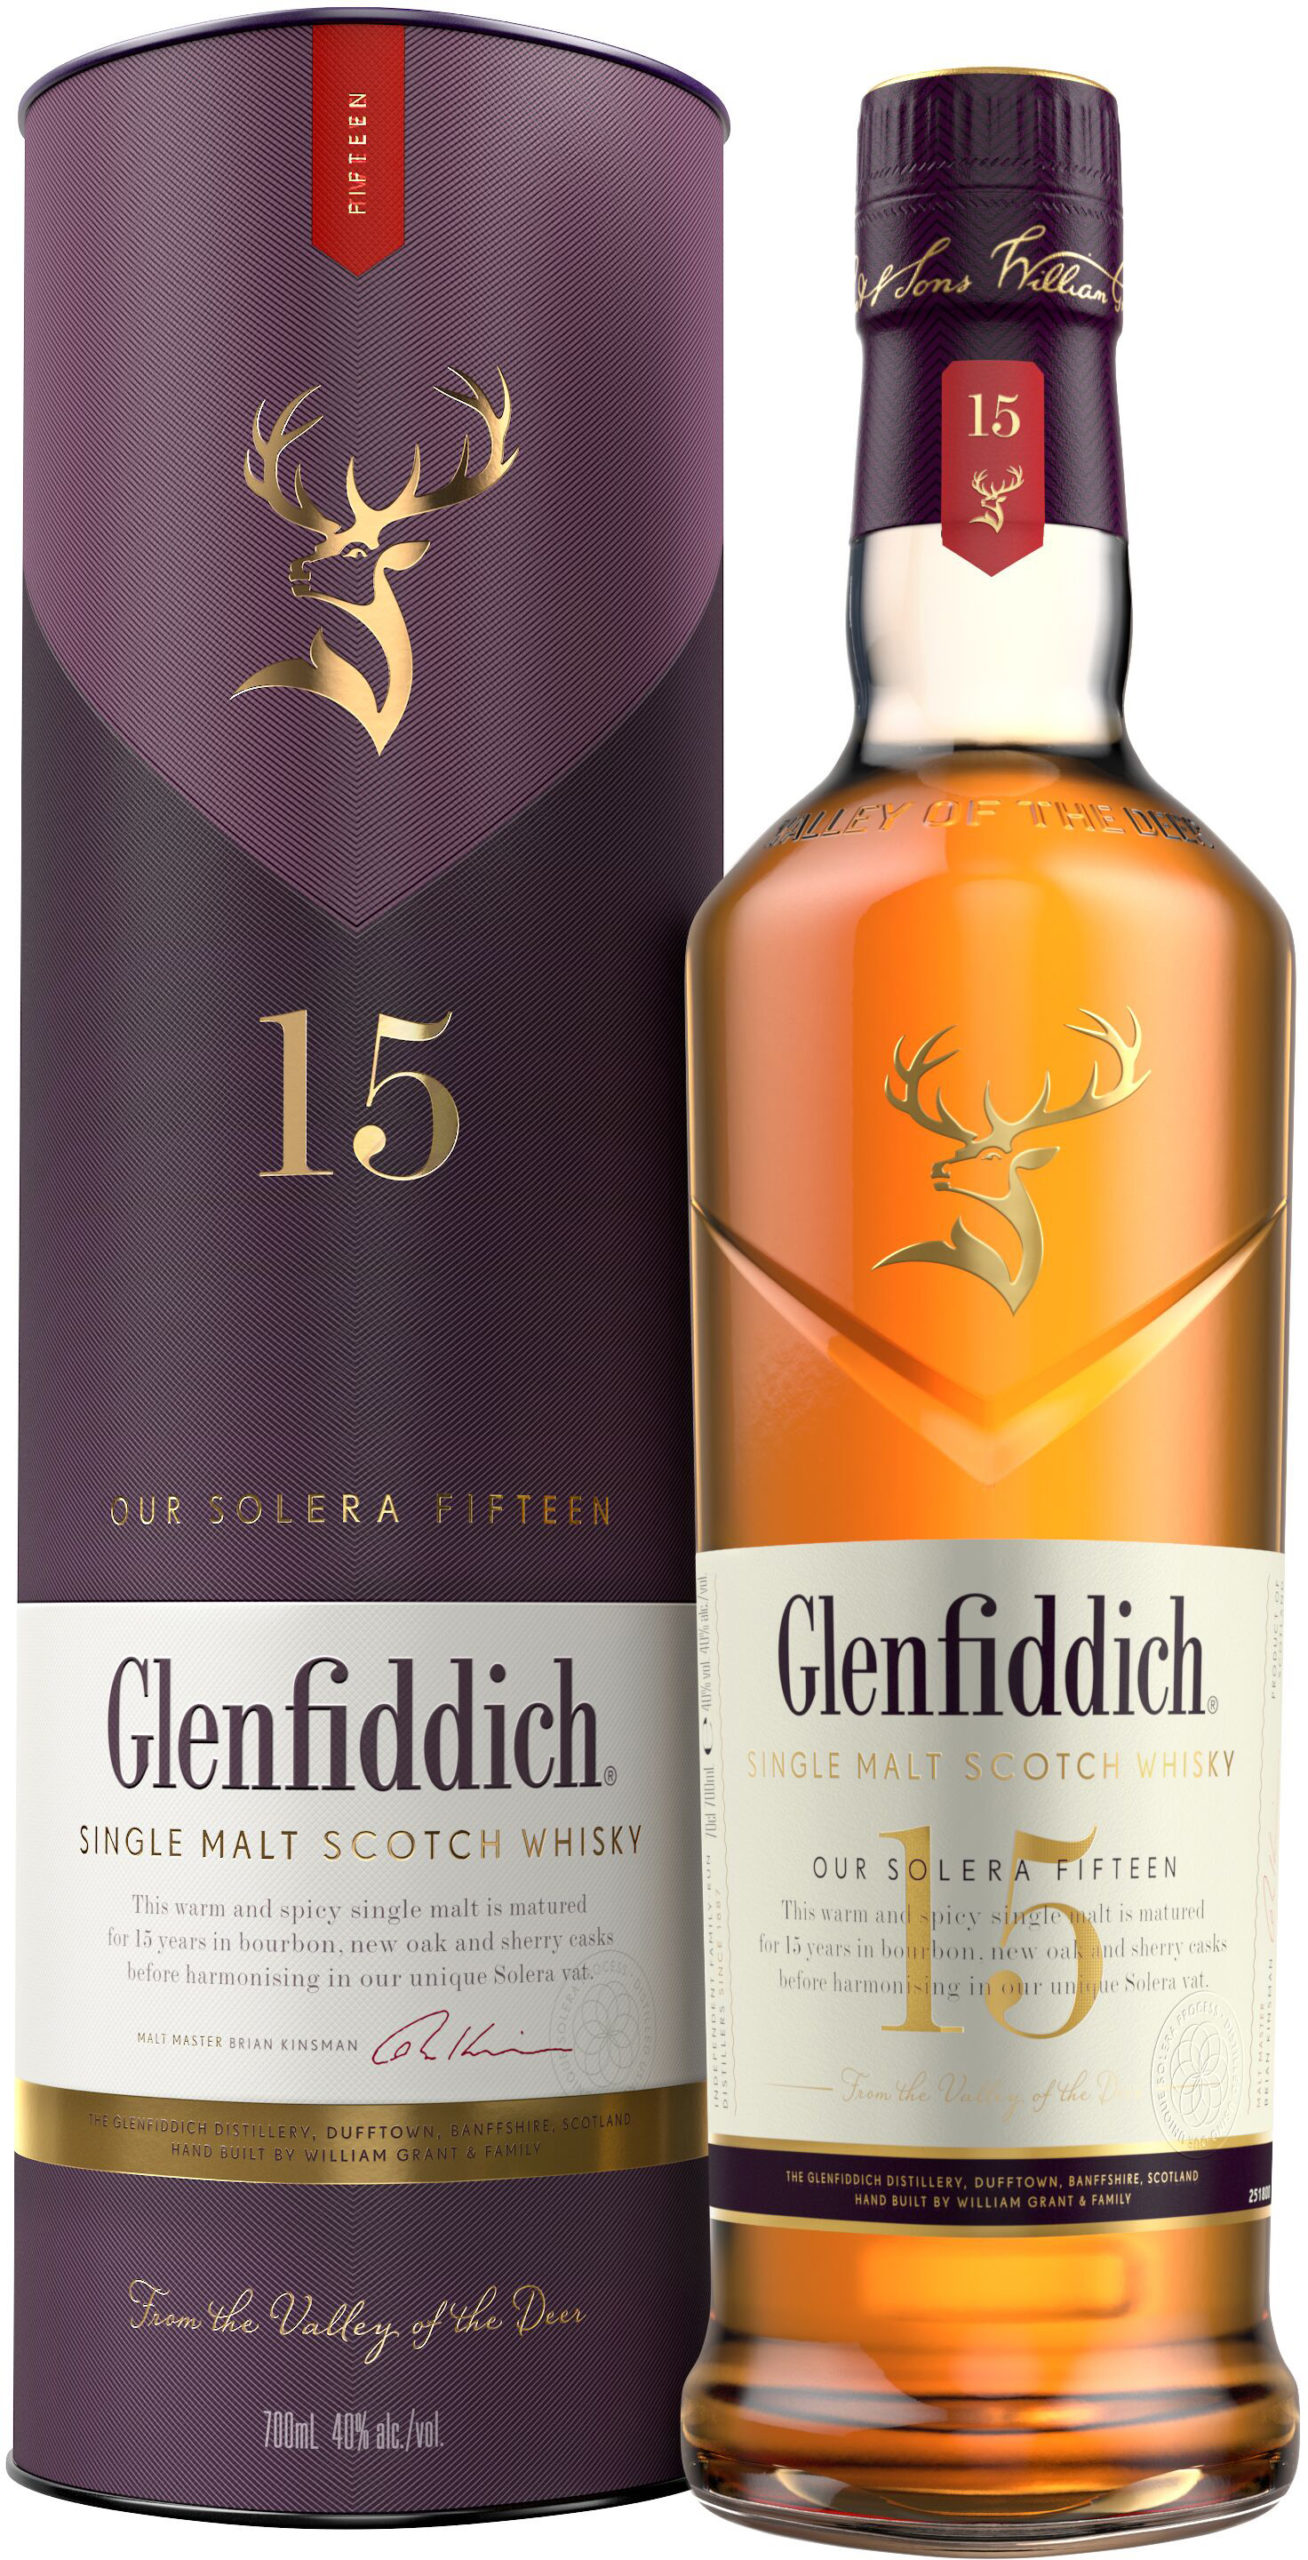 Glenfiddich 15 Year Old Single Malt